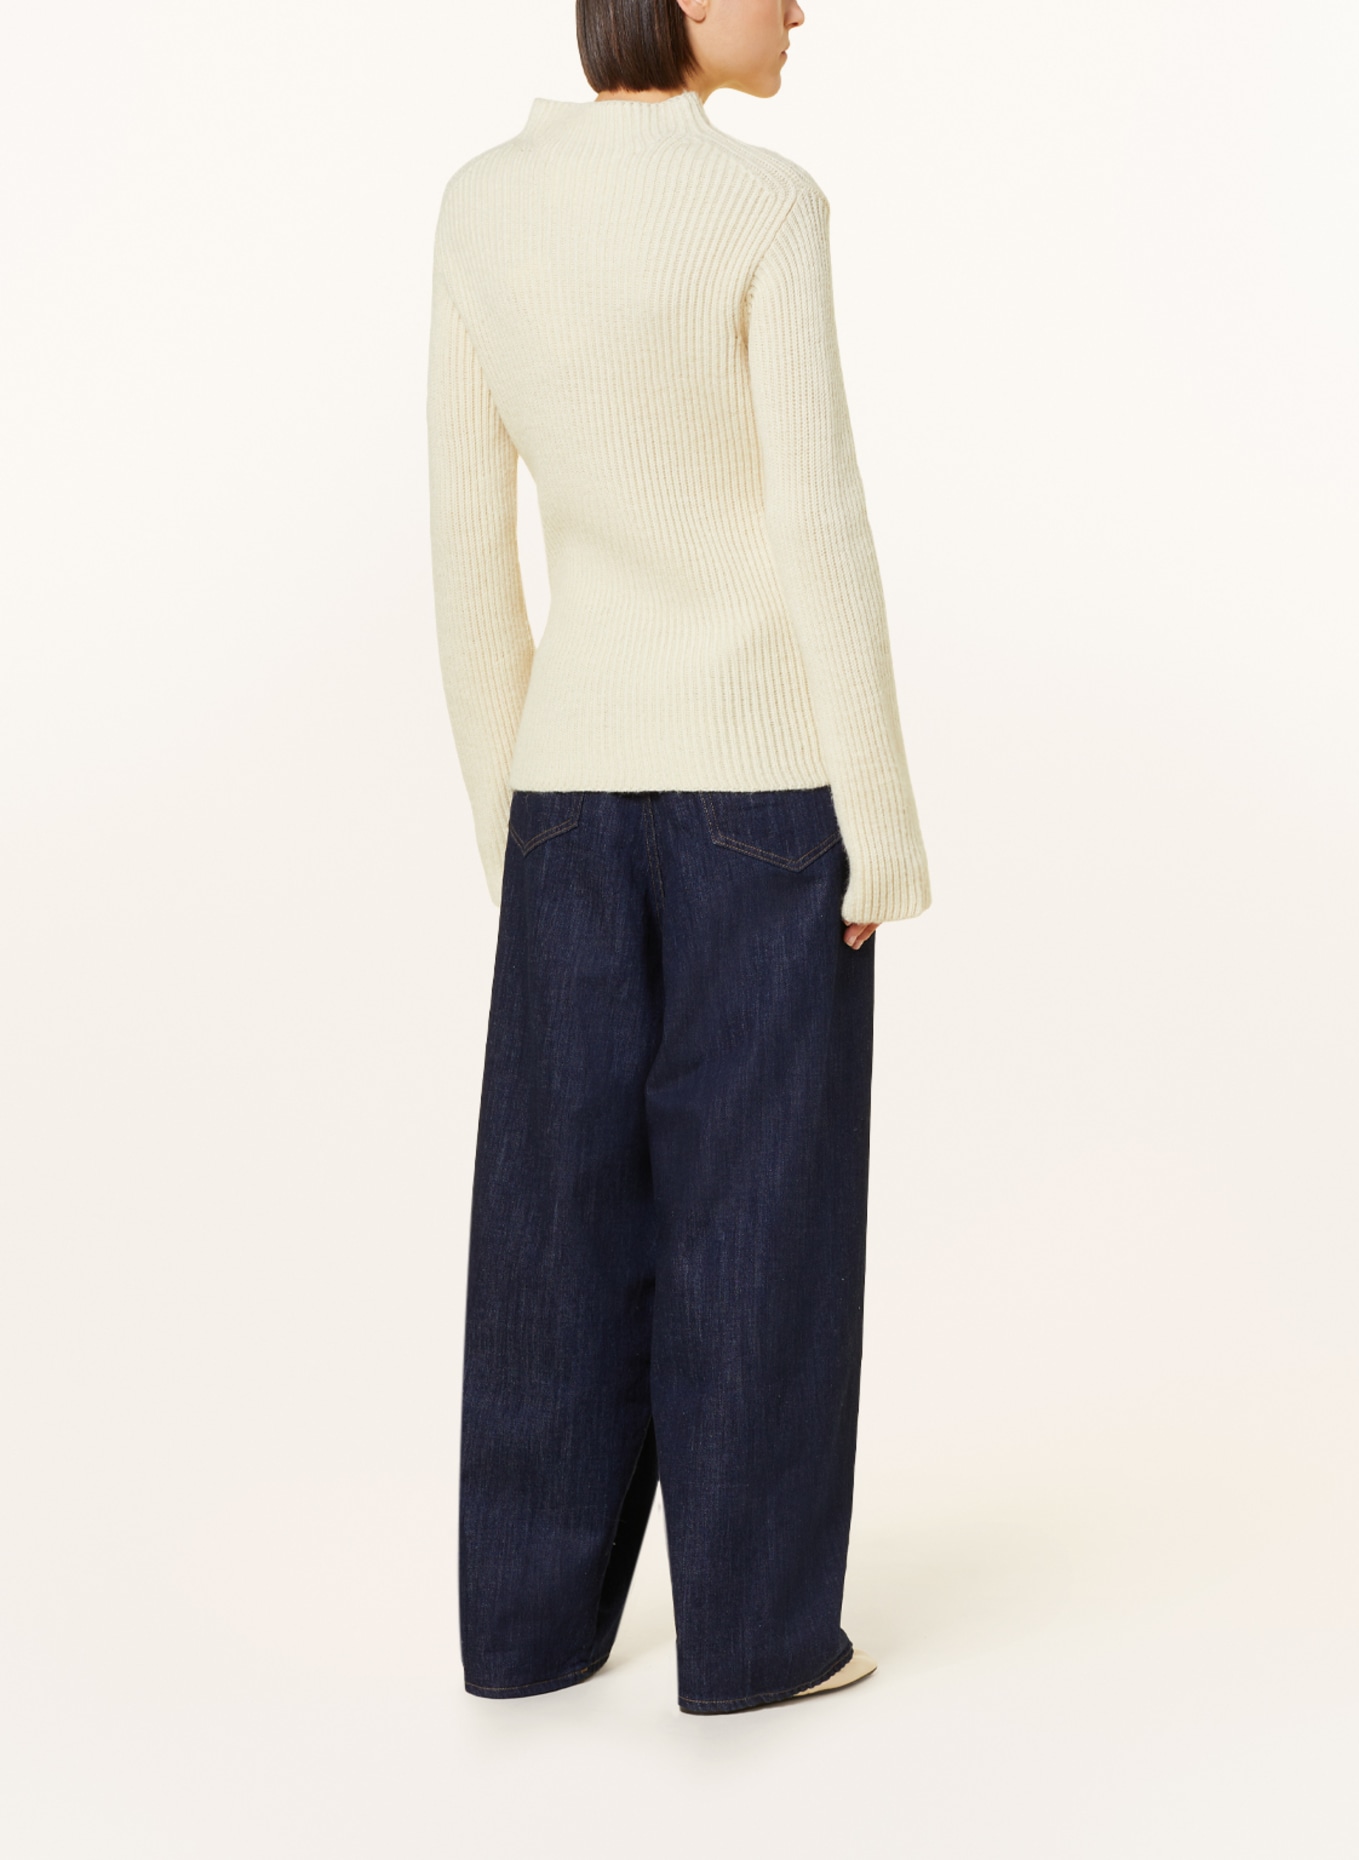 CLOSED Sweater with alpaca, Color: ECRU (Image 3)